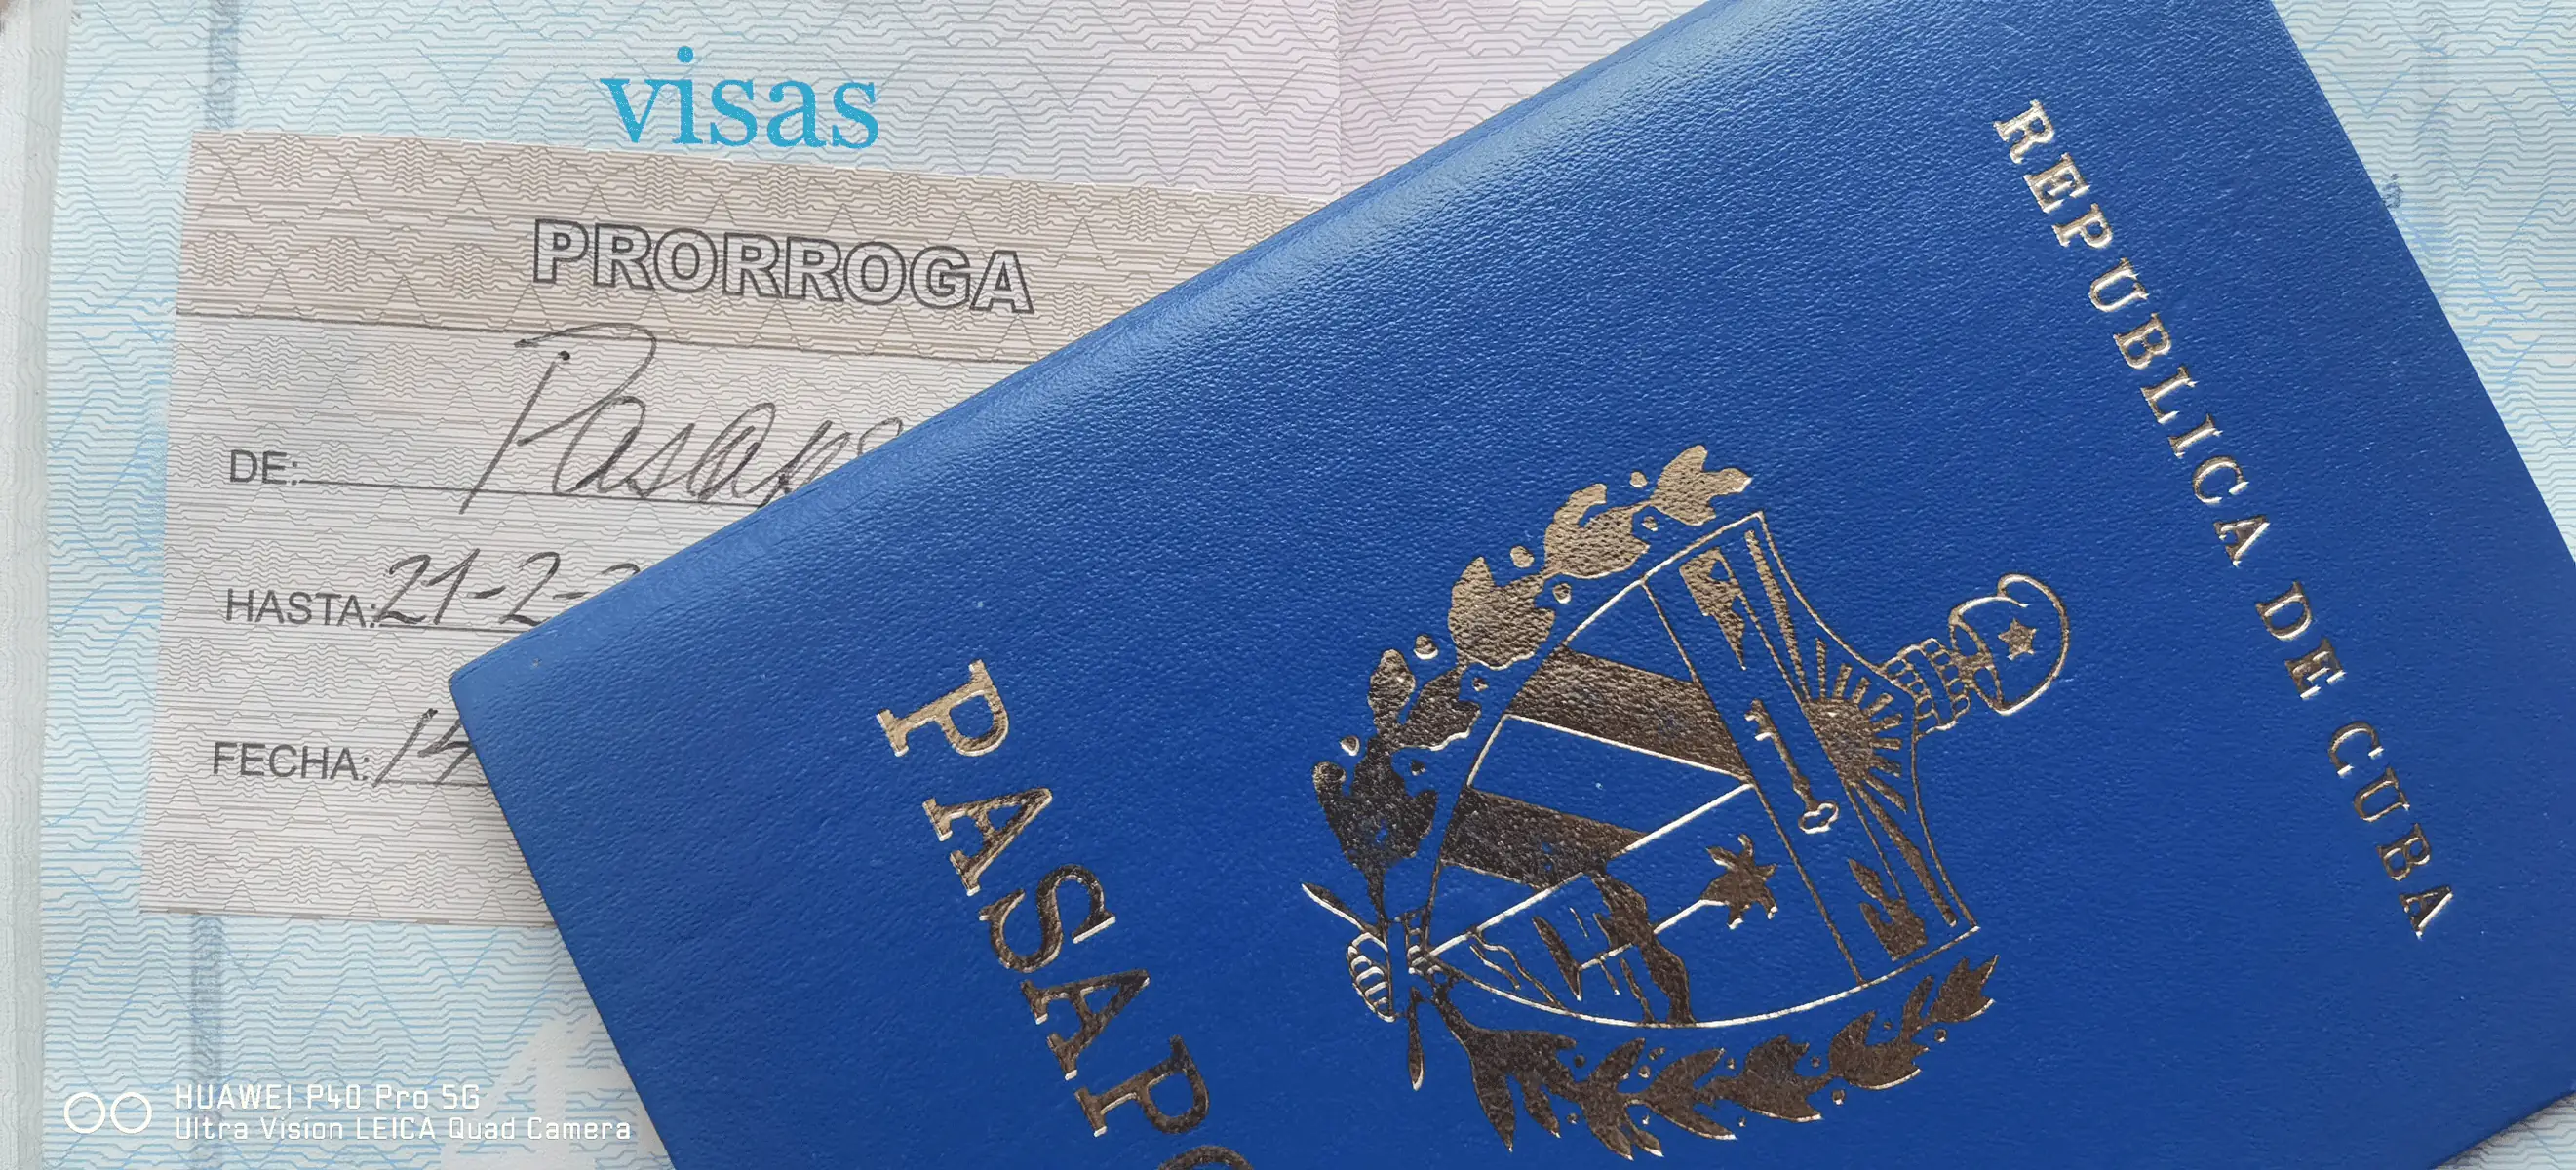 Correos de Cuba Informa sobre Venta de de Sellos de Prorroga de Pasaporte